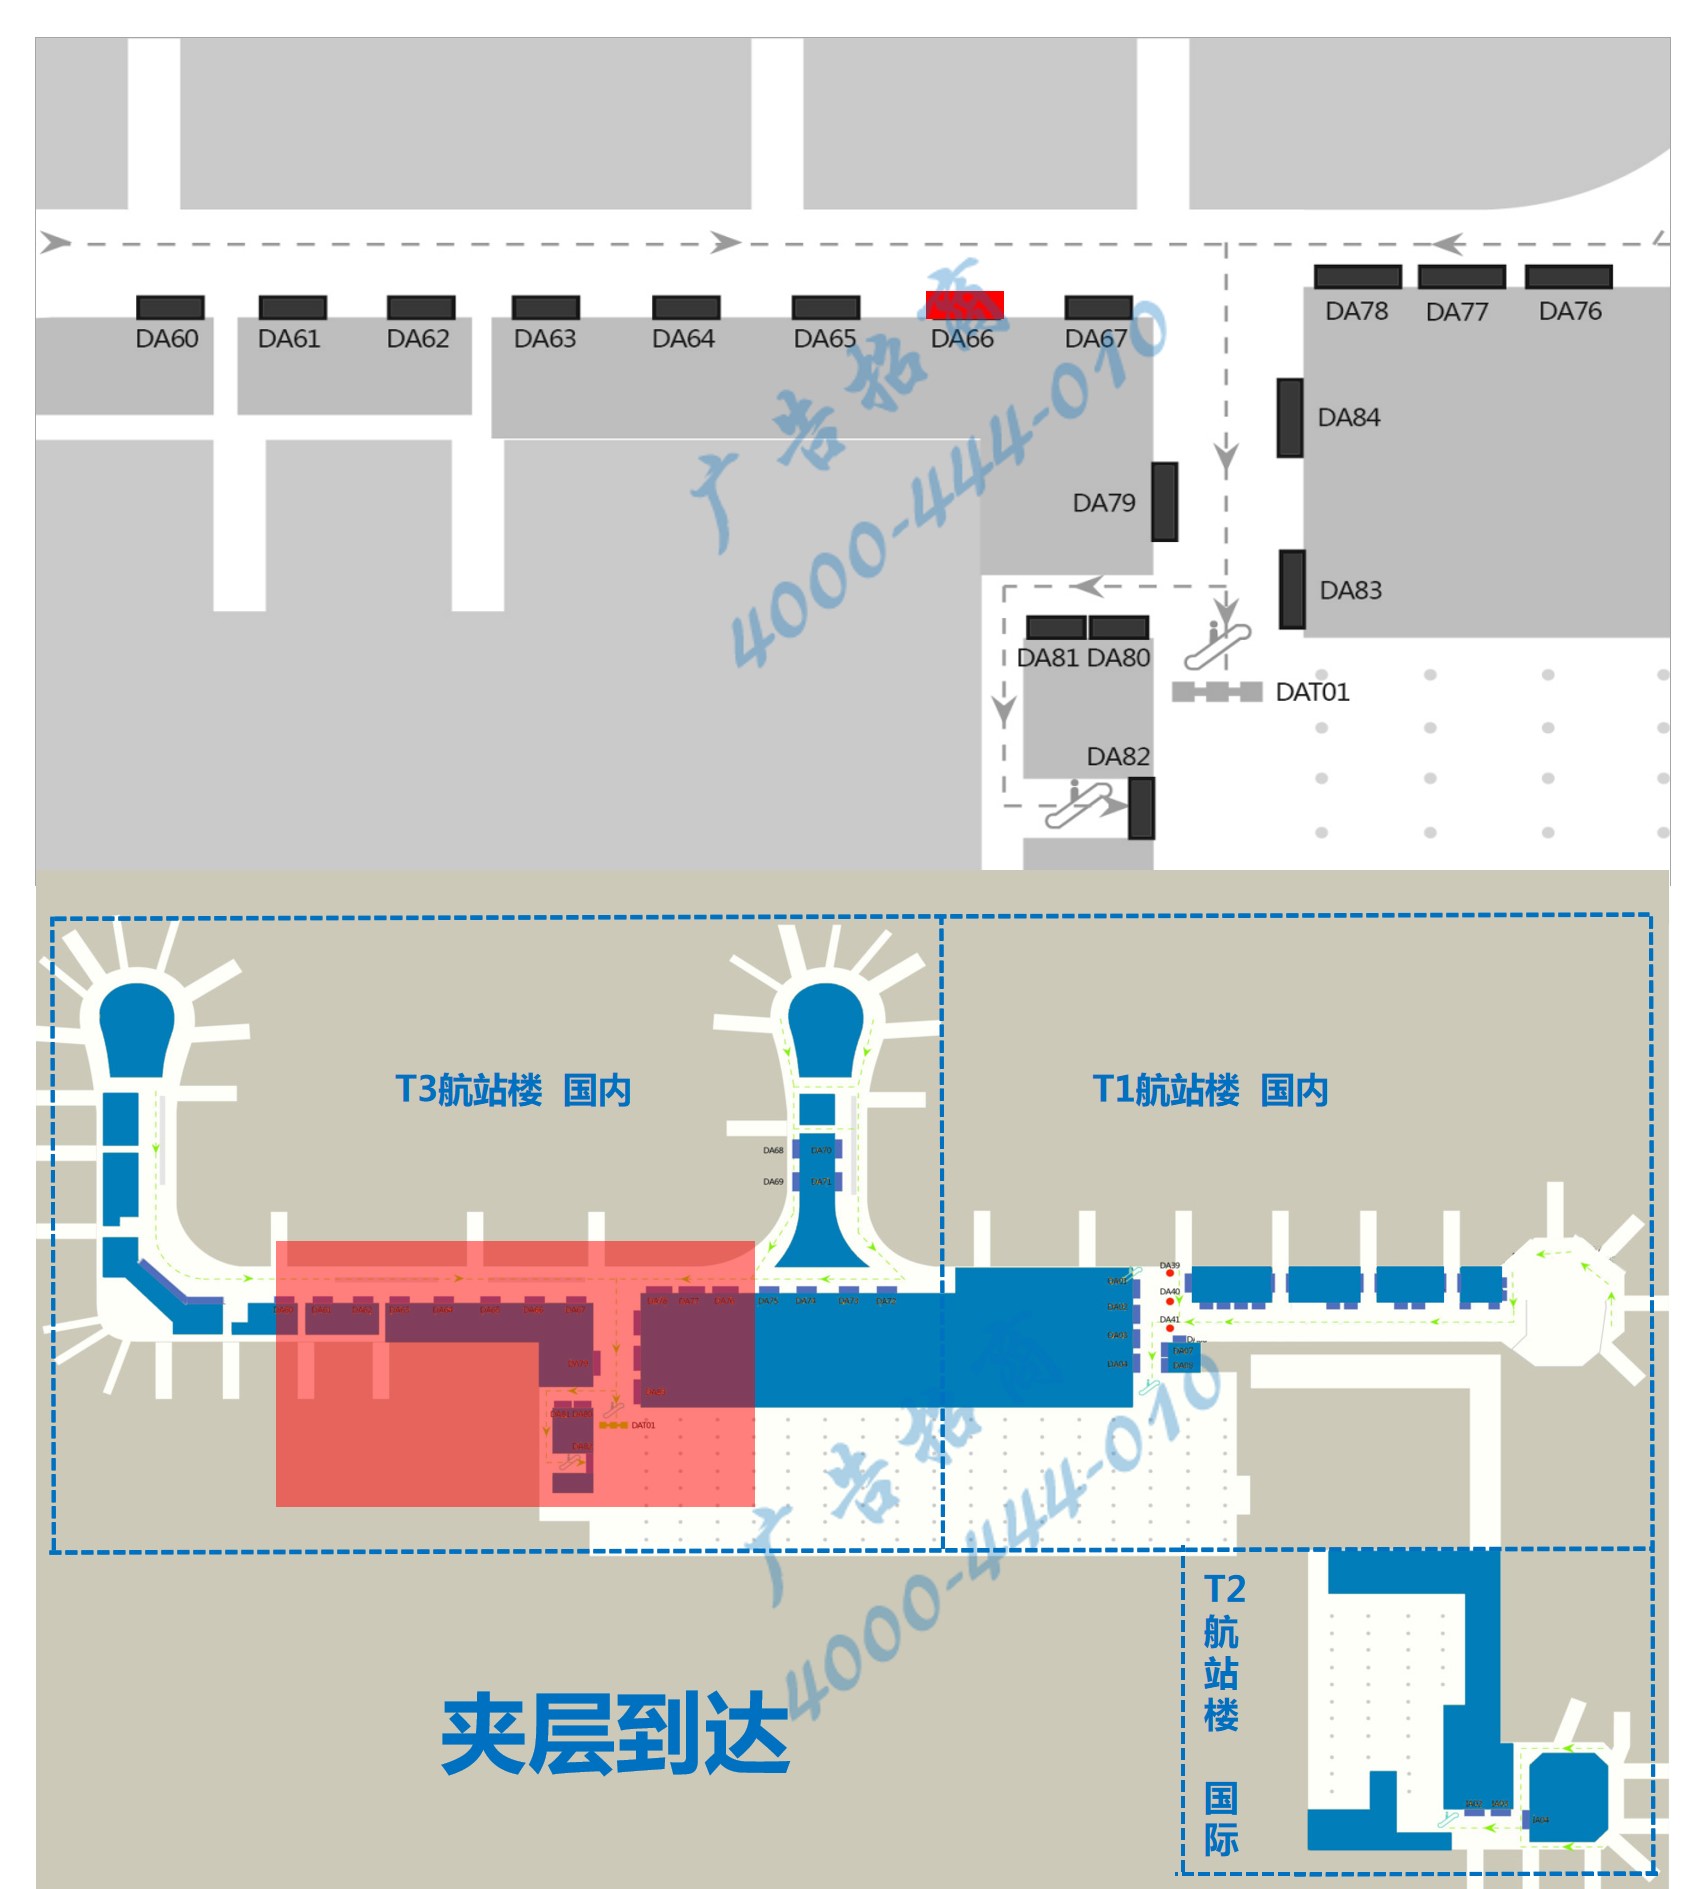 杭州机场广告-T3到达通廊自动扶梯旁灯箱DA66点位图